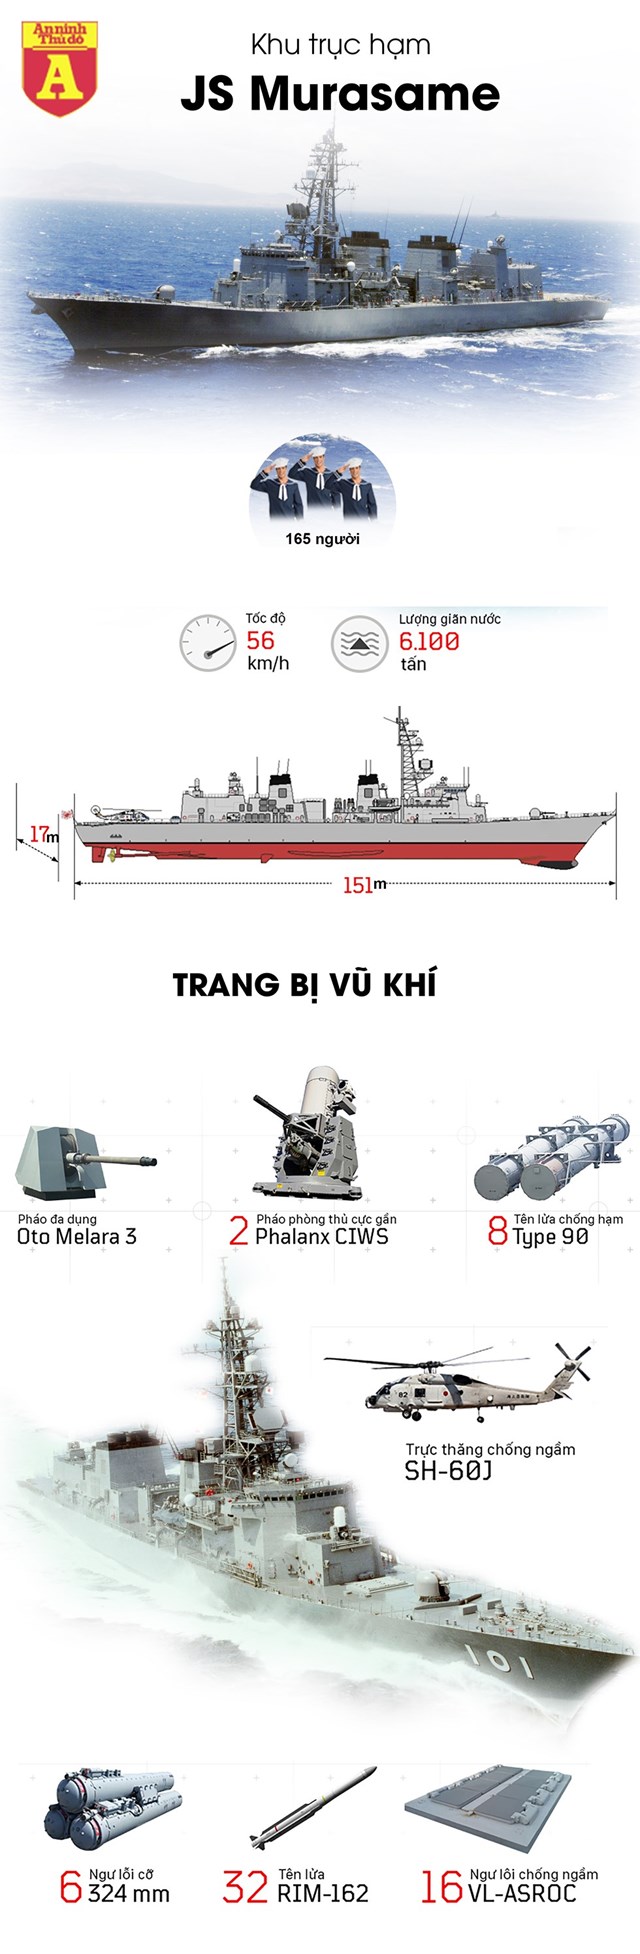 [Infographics] Khu trục hạm cực mạnh của Nhật Bản tới Việt Nam - Ảnh 1